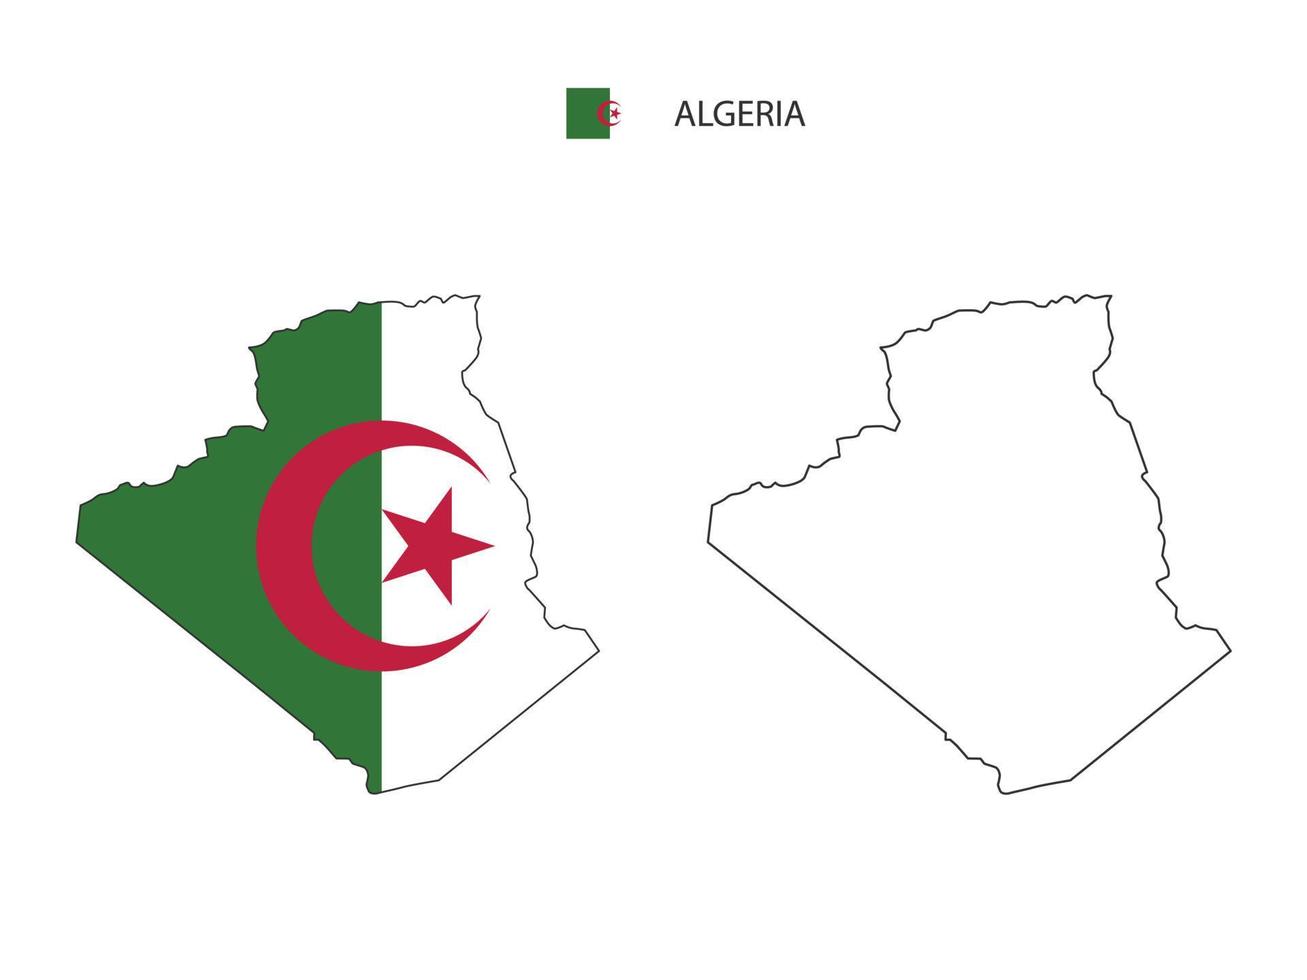 algerien-karte stadtvektor geteilt durch umriss-einfachheitsstil. haben 2 Versionen, eine schwarze Version mit dünner Linie und eine Version in der Farbe der Landesflagge. beide Karten waren auf dem weißen Hintergrund. vektor